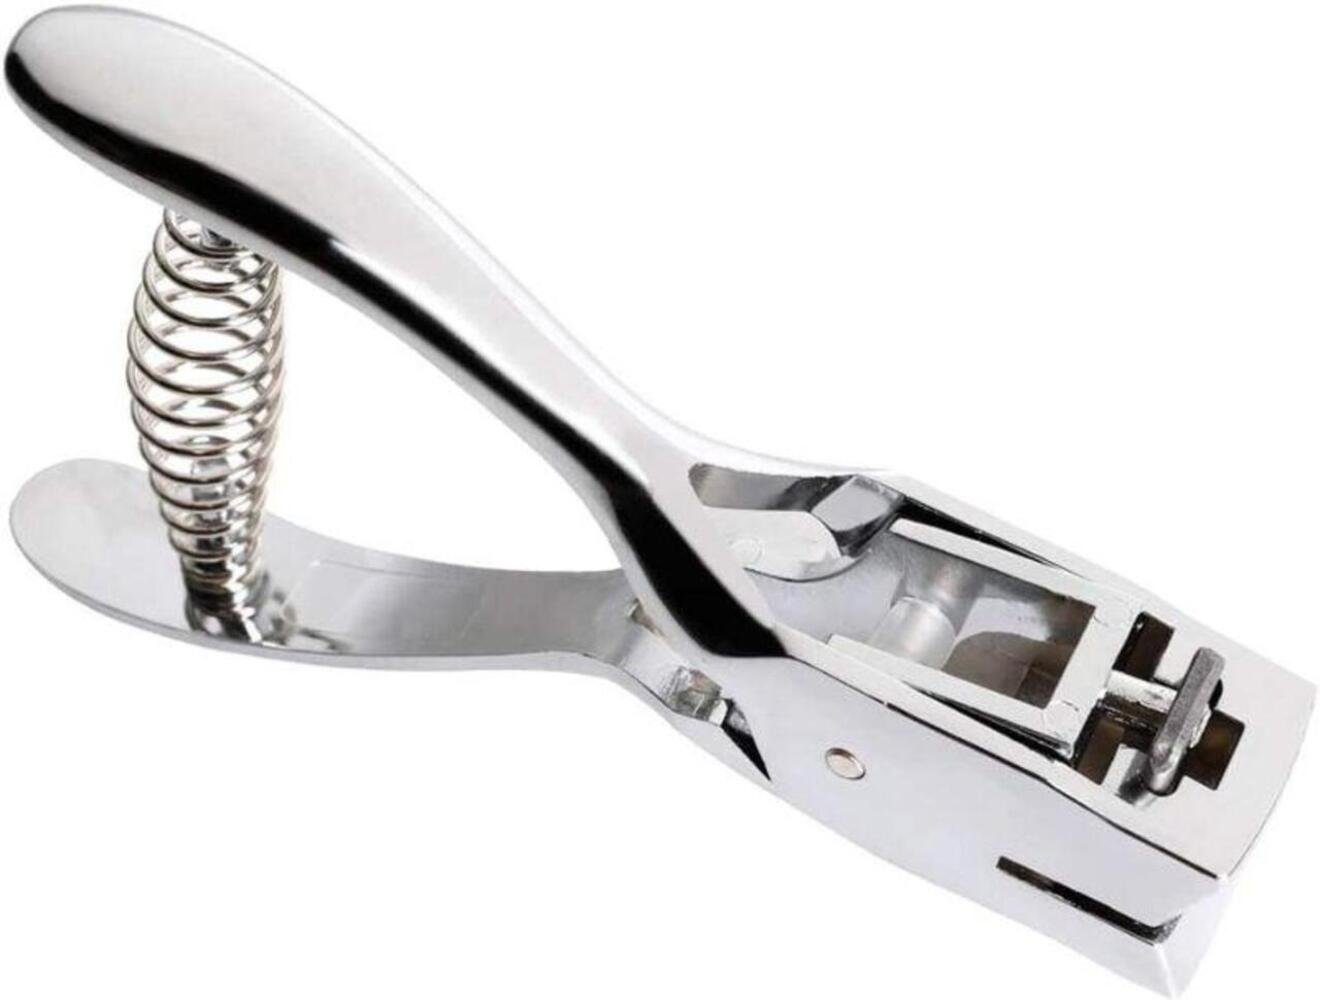 Einemgeld Revolverlochzange Metall Silber Hand-Held Hole Punch RechteckSlot Form Zange | Zangen